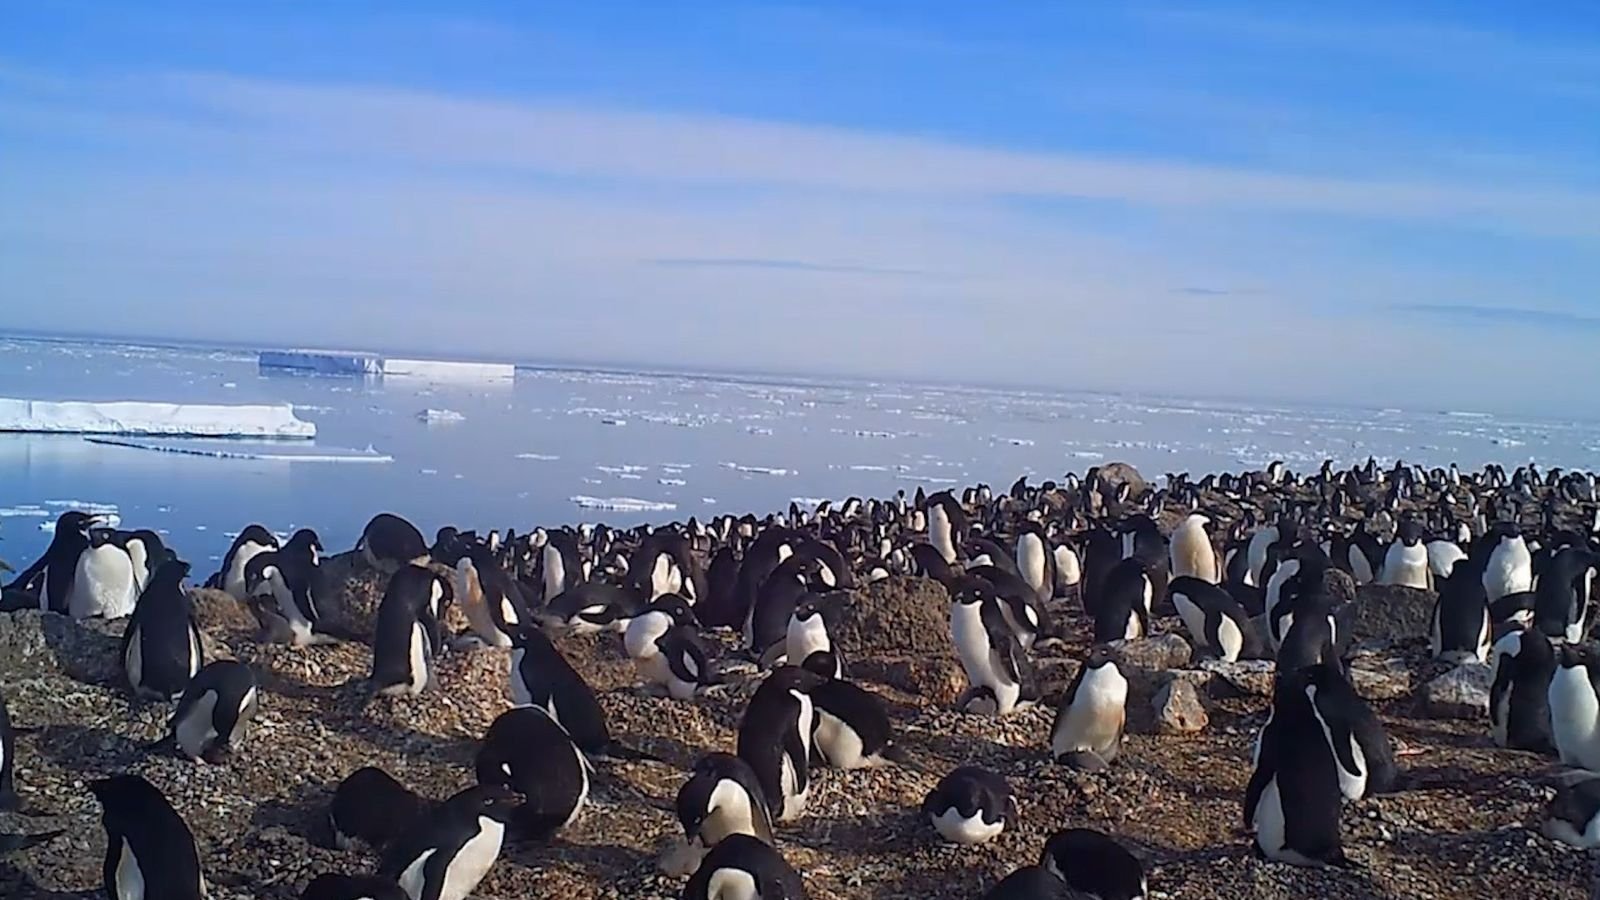 Ein kleiner Einblick in eine versteckte Kolonie von 1,5 Millionen antarktischen Pinguinen